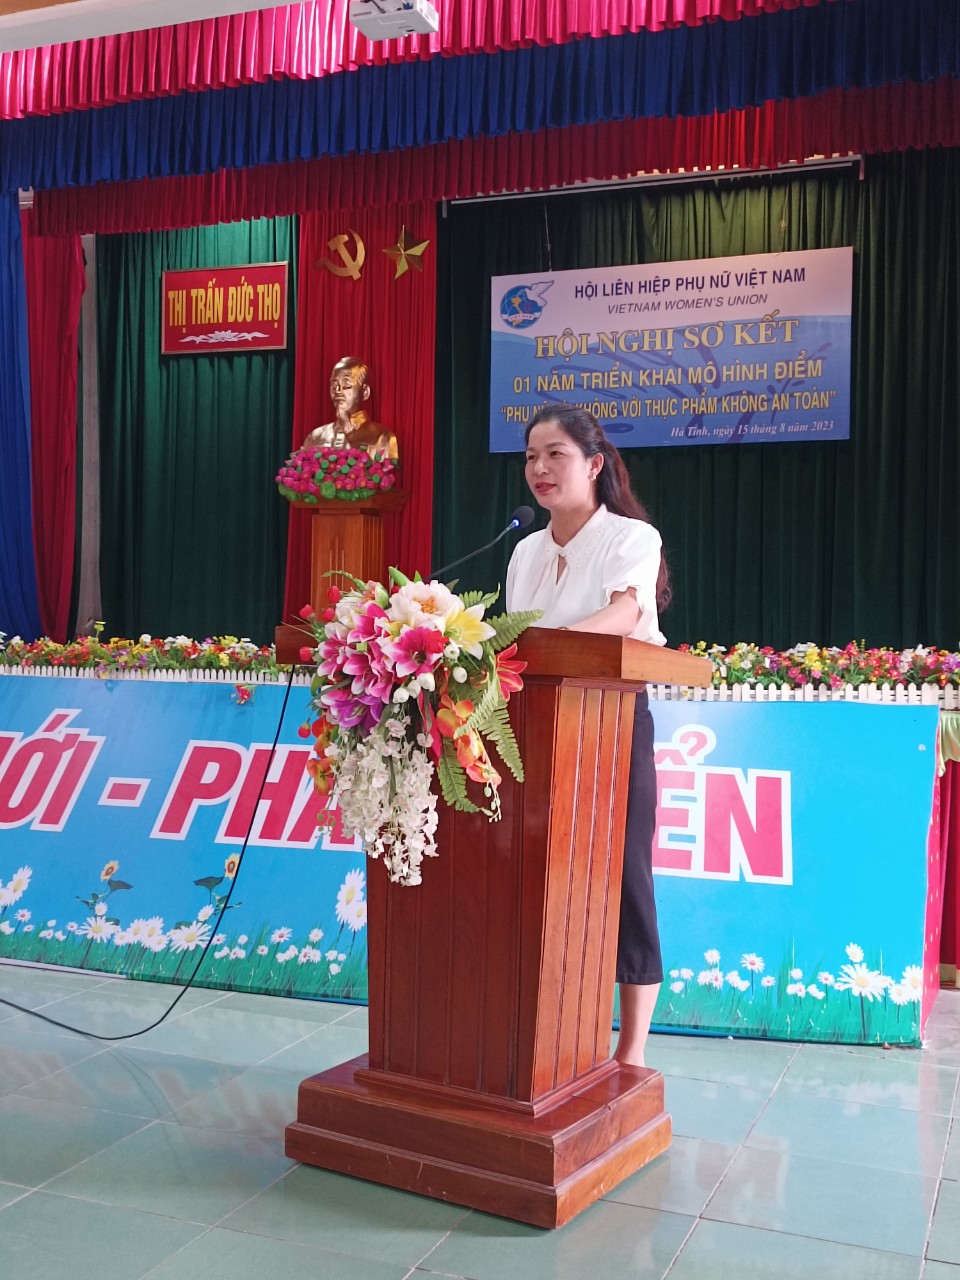 , đồng chí Trần Thị Thùy Nhung, Huyện ủy viên - Chủ tịch Hội LHPN huyện Đức Thọ, phát biểu tại Hội nghị